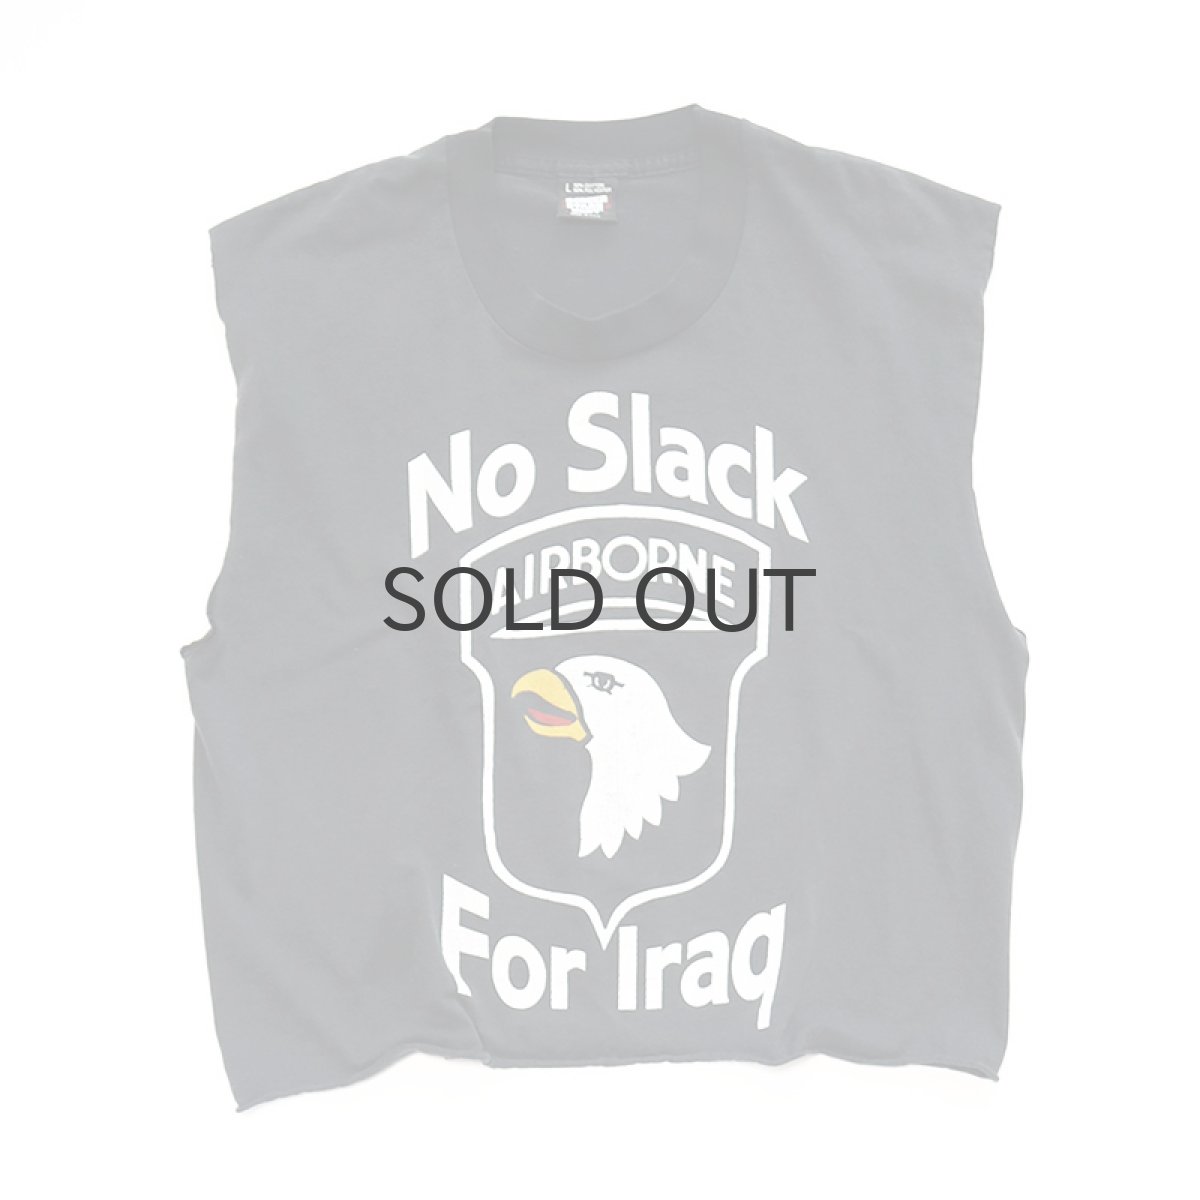 画像1: 〜90's SCREEN STARS PRINT CUT-OFF N/S CROPPED TEE "No Slack For Iraq" (1)